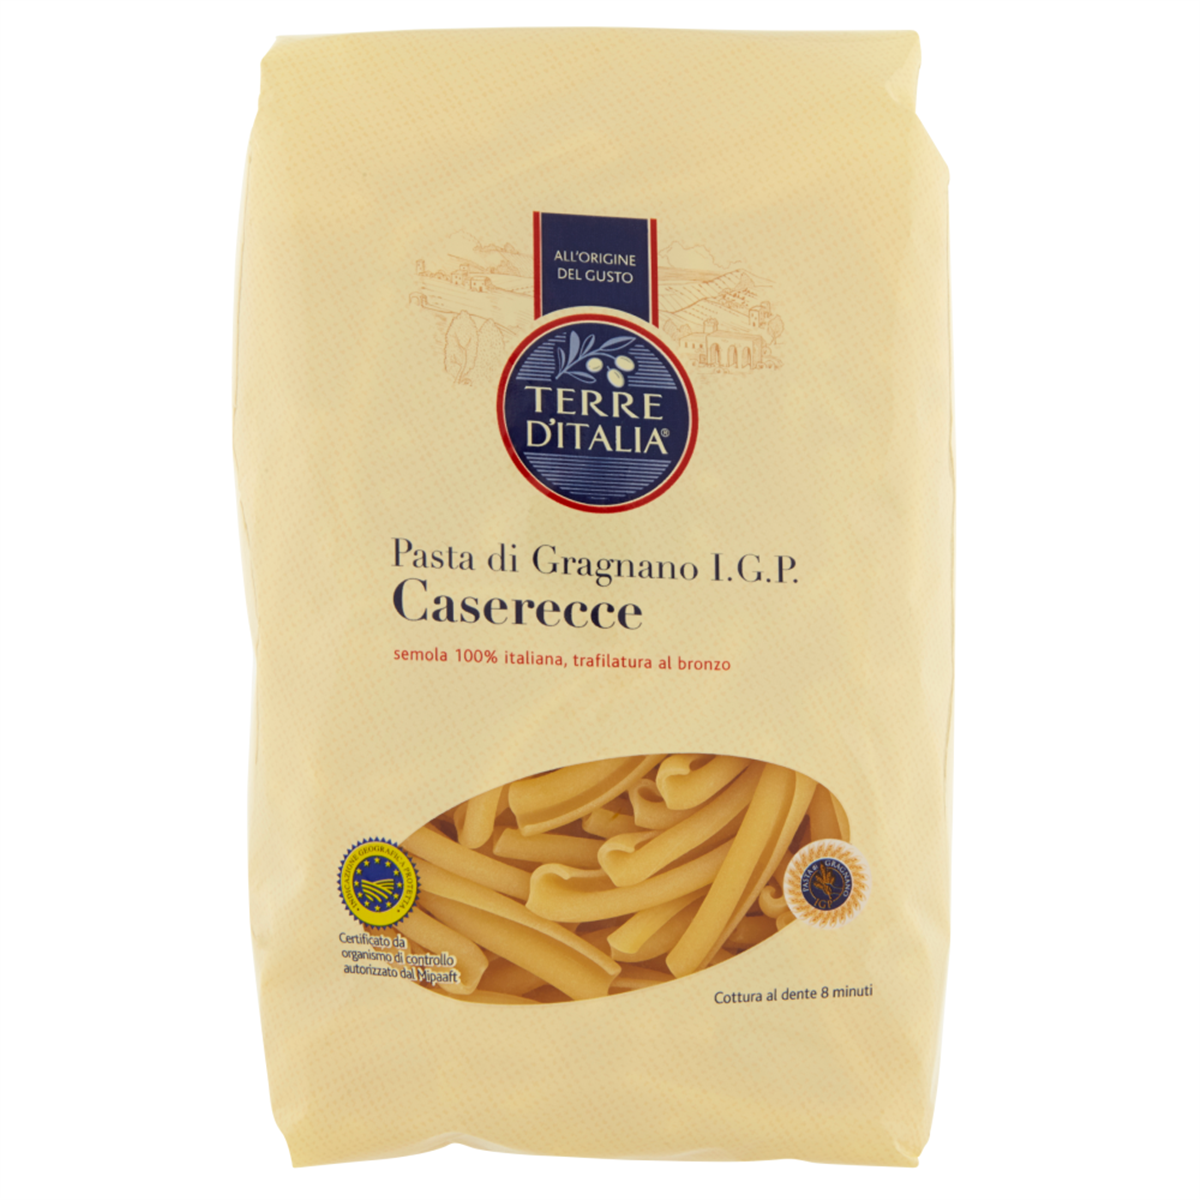 Pasta di Gragnano I.G.P. Caserecce